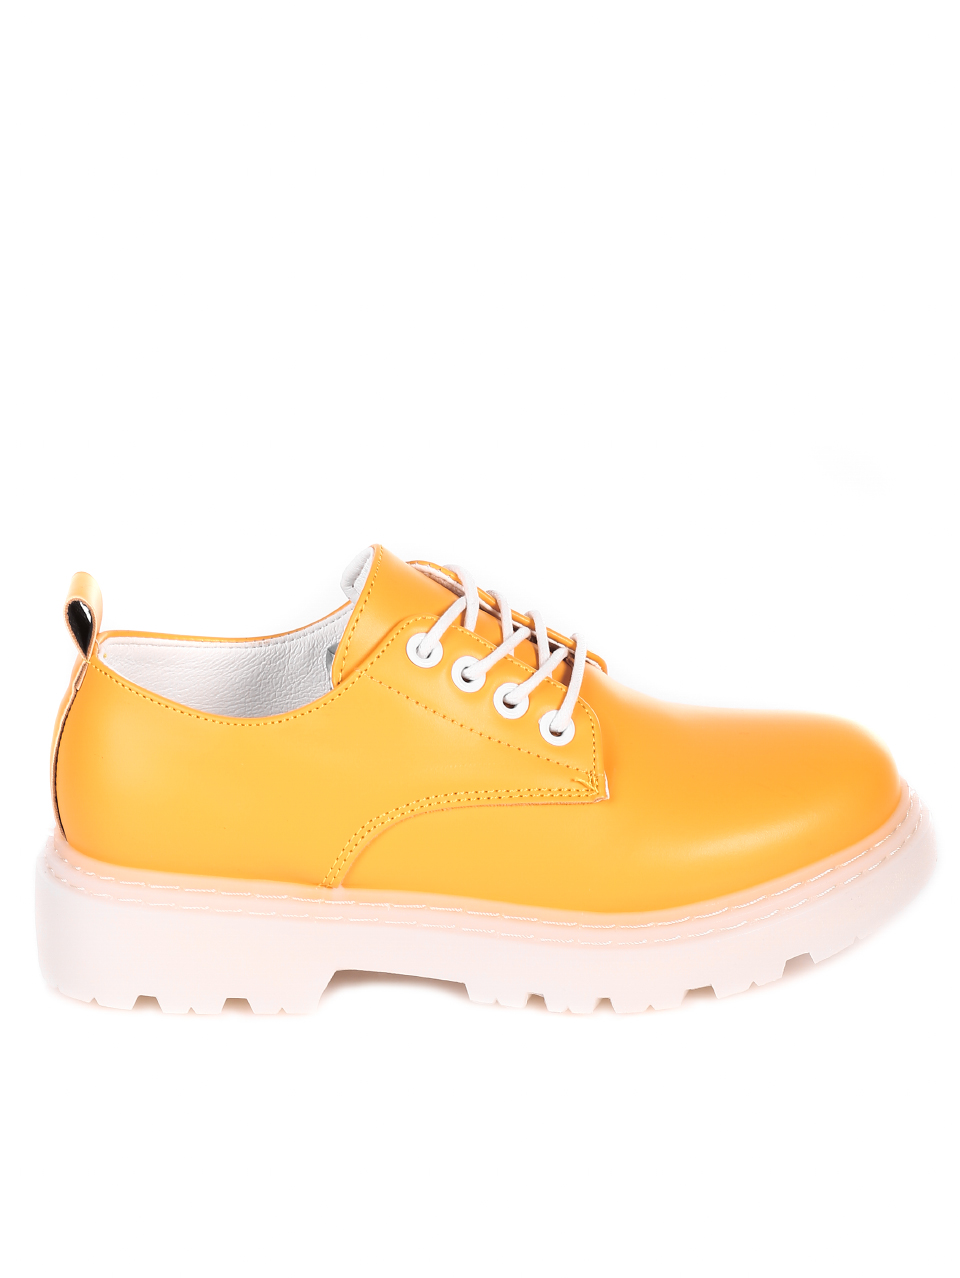 Ежедневни дамски обувки в жълто 3U-21015 yellow